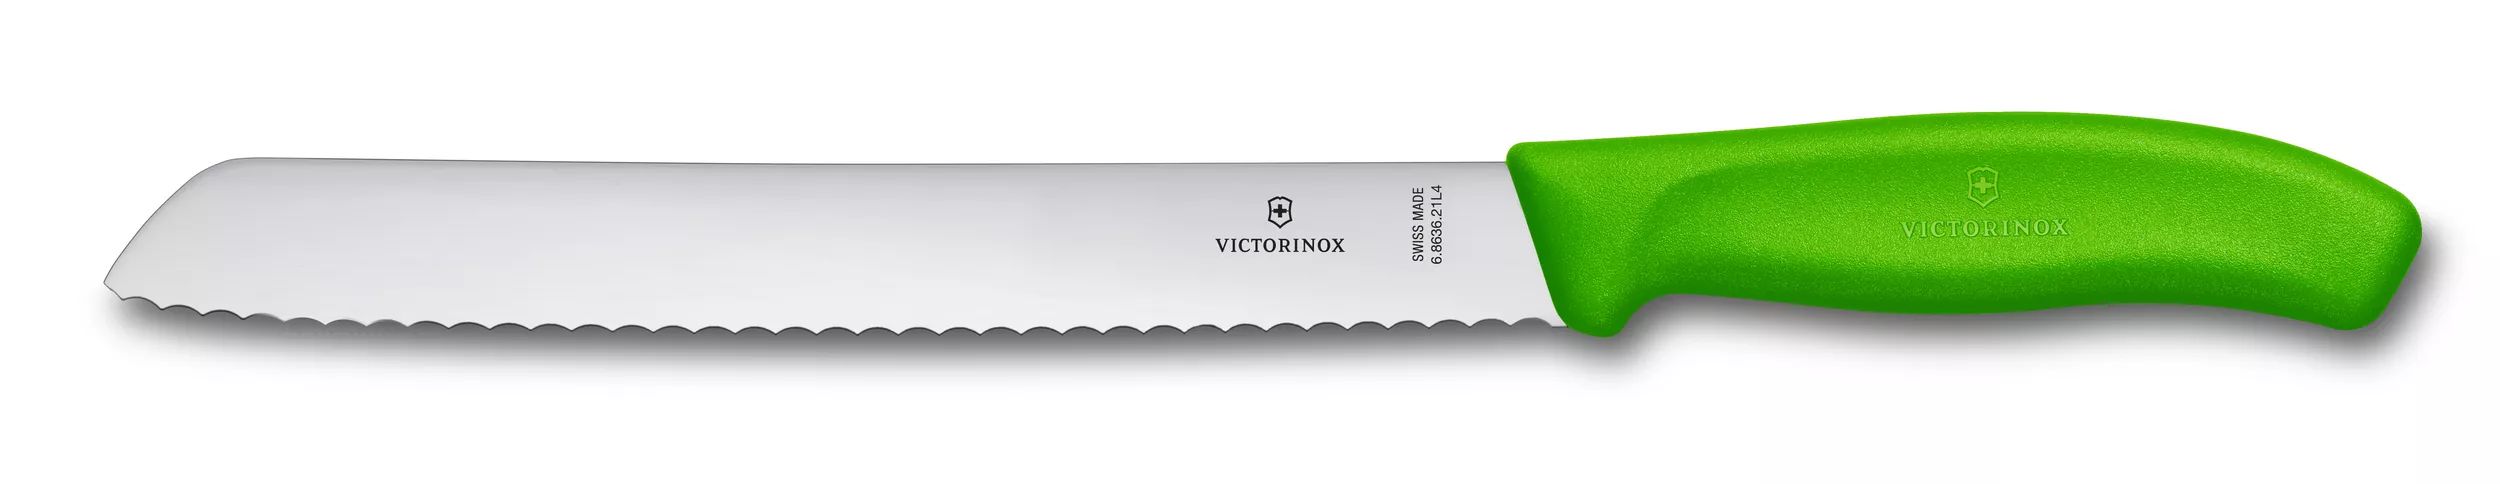 Swiss Classic Bread Knife-6.8636.21L4B